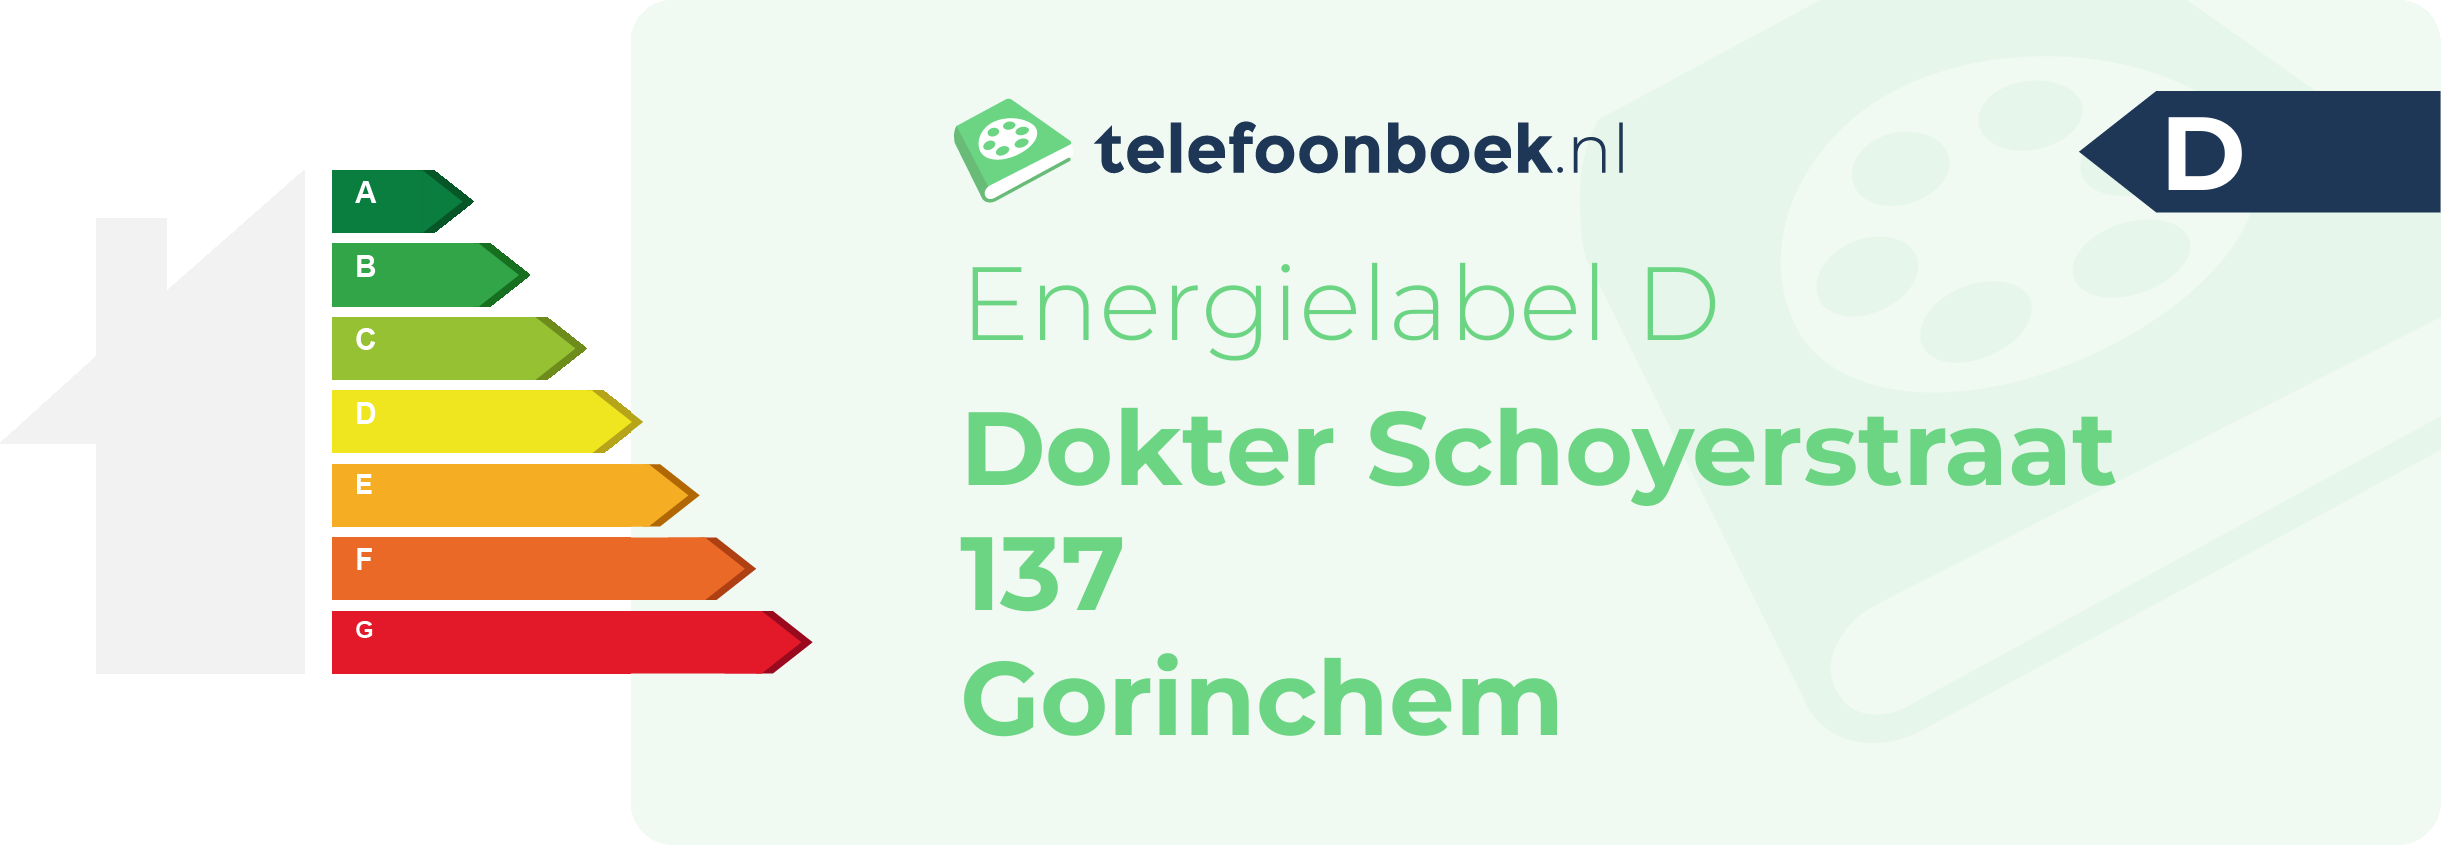 Energielabel Dokter Schoyerstraat 137 Gorinchem